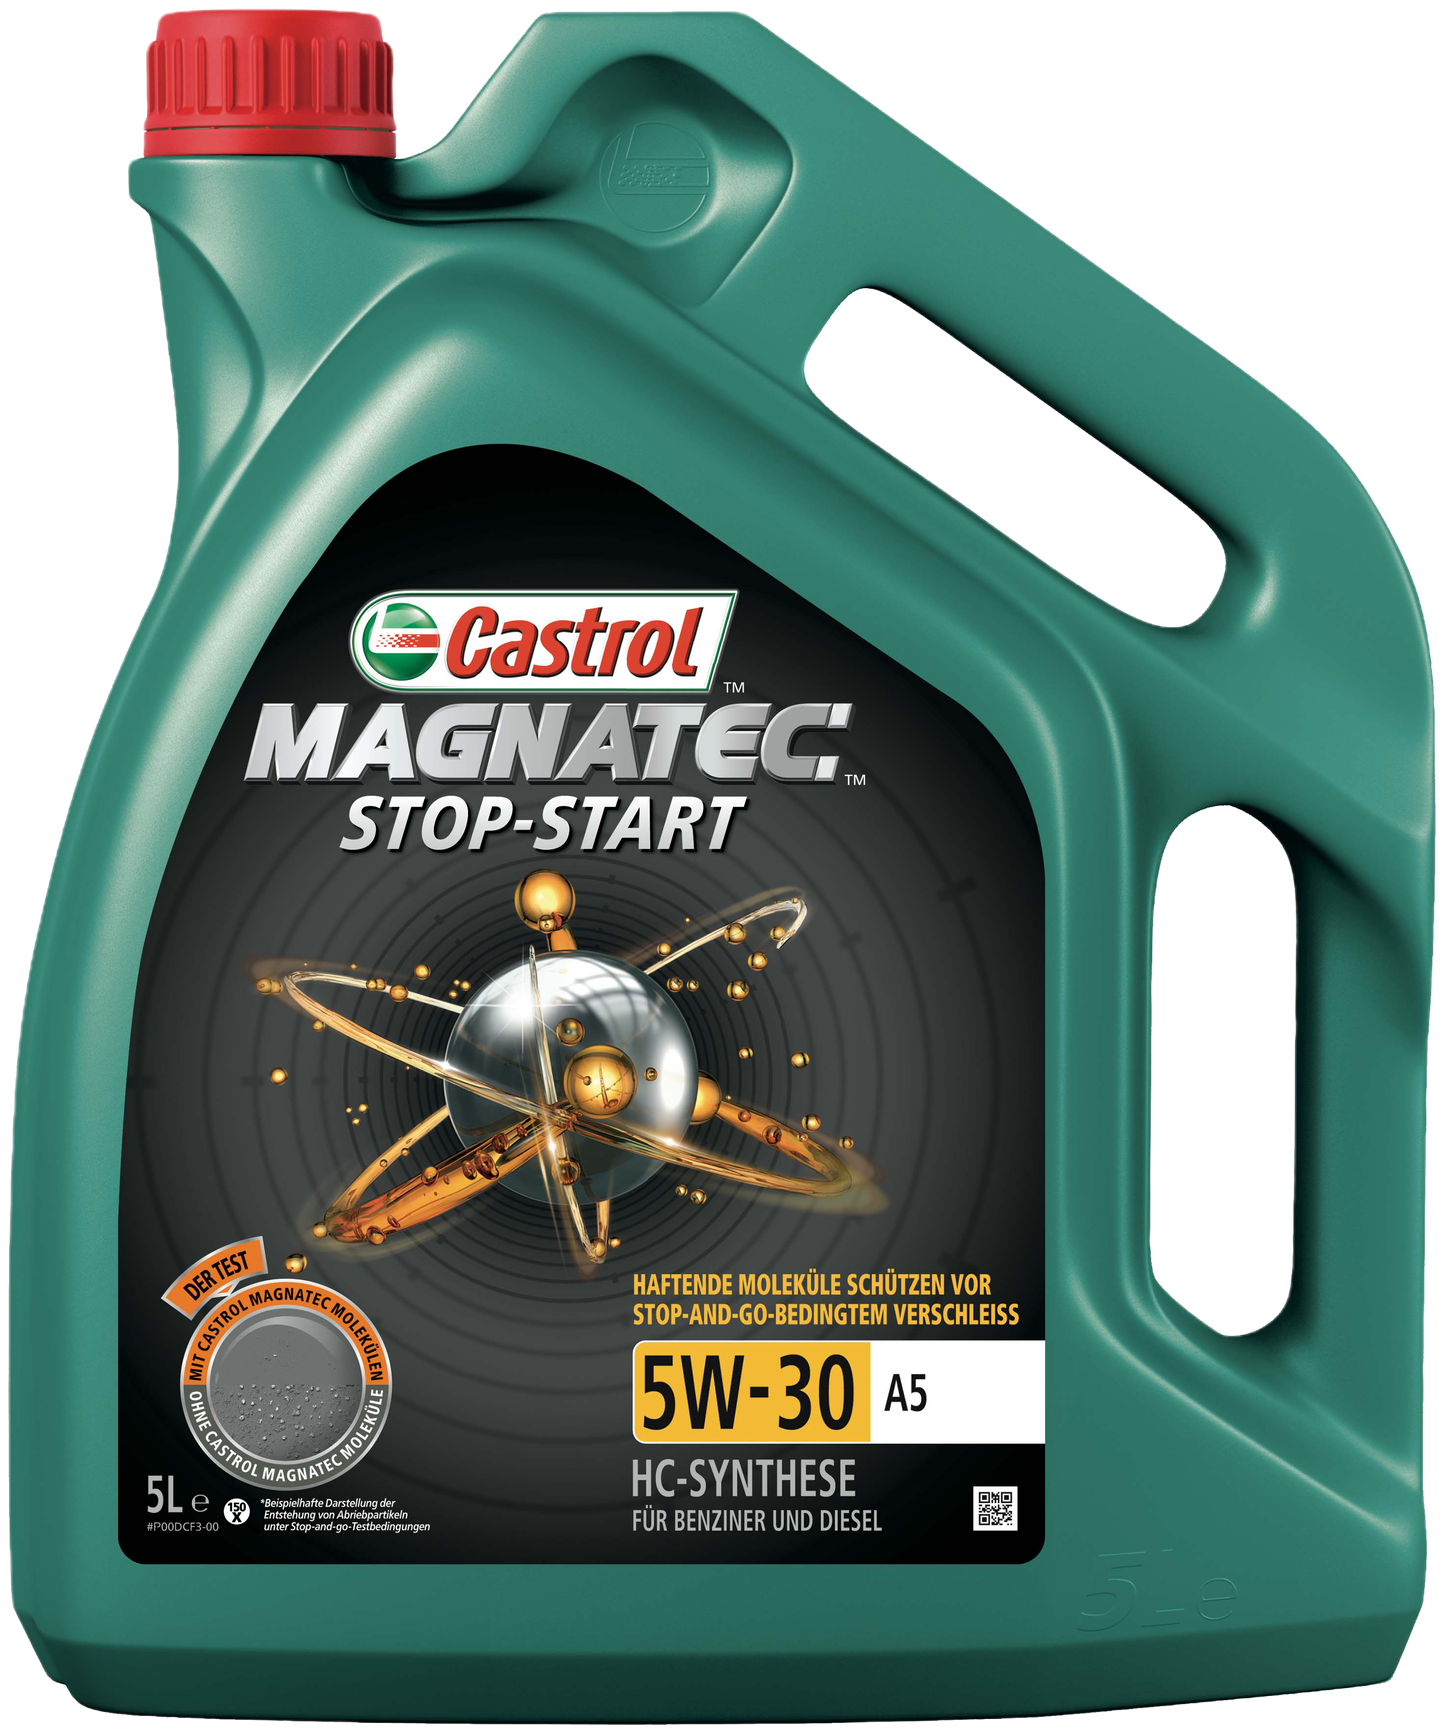 Castrol Magnatec Stop-Start 5W-30 A5, 5 lt